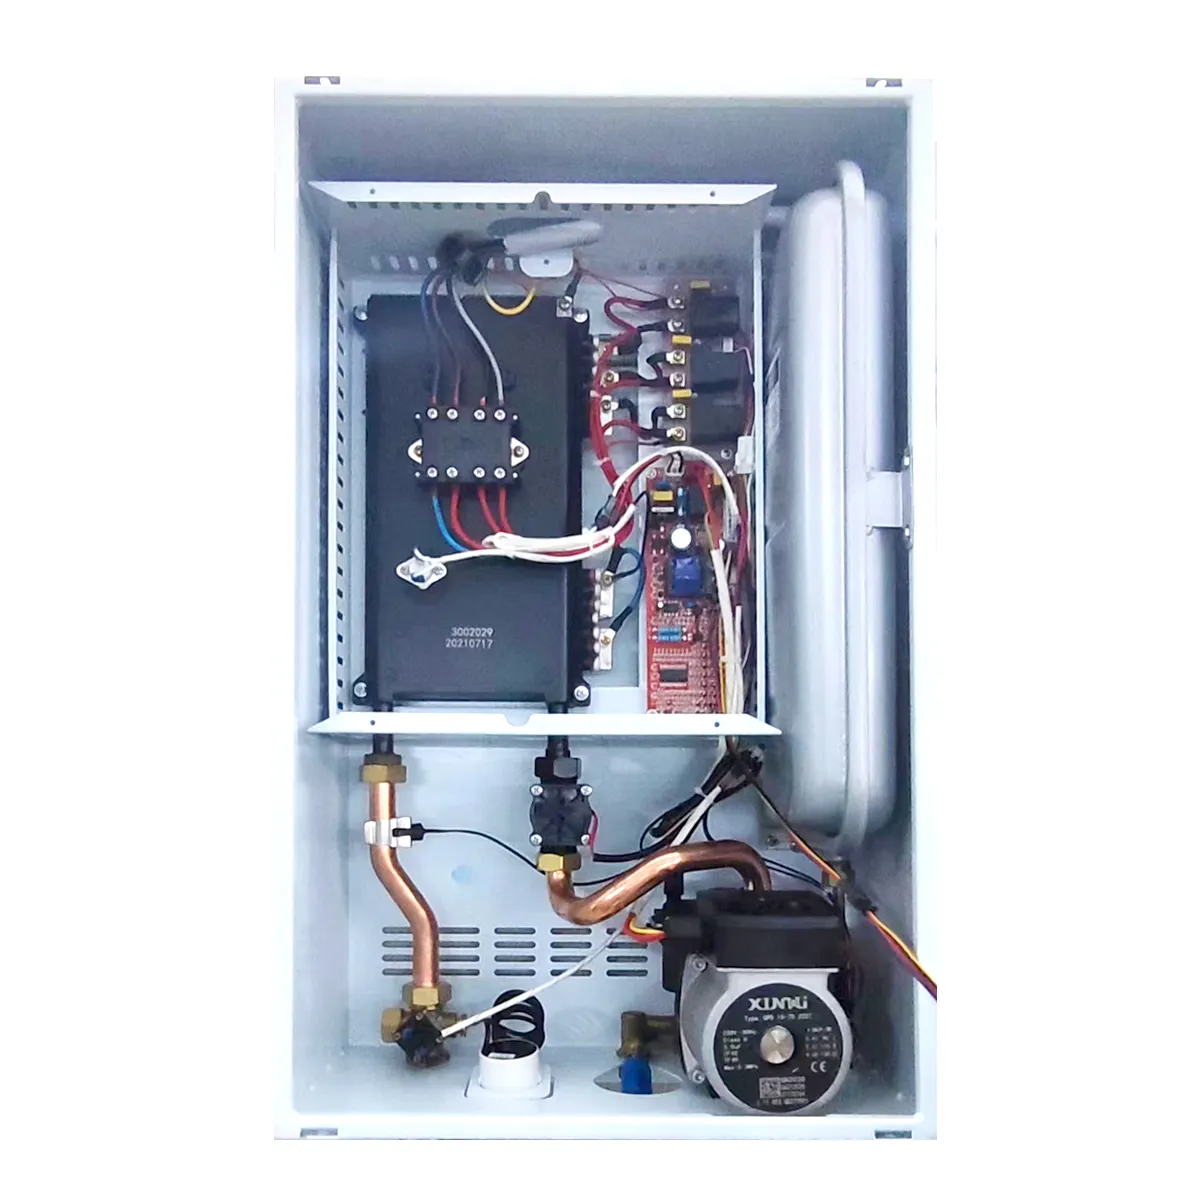 Caldaia combinata elettrica 24kw sistema di riscaldamento a pavimento caldaia elettrica combi per riscaldamento centralizzato per la casa